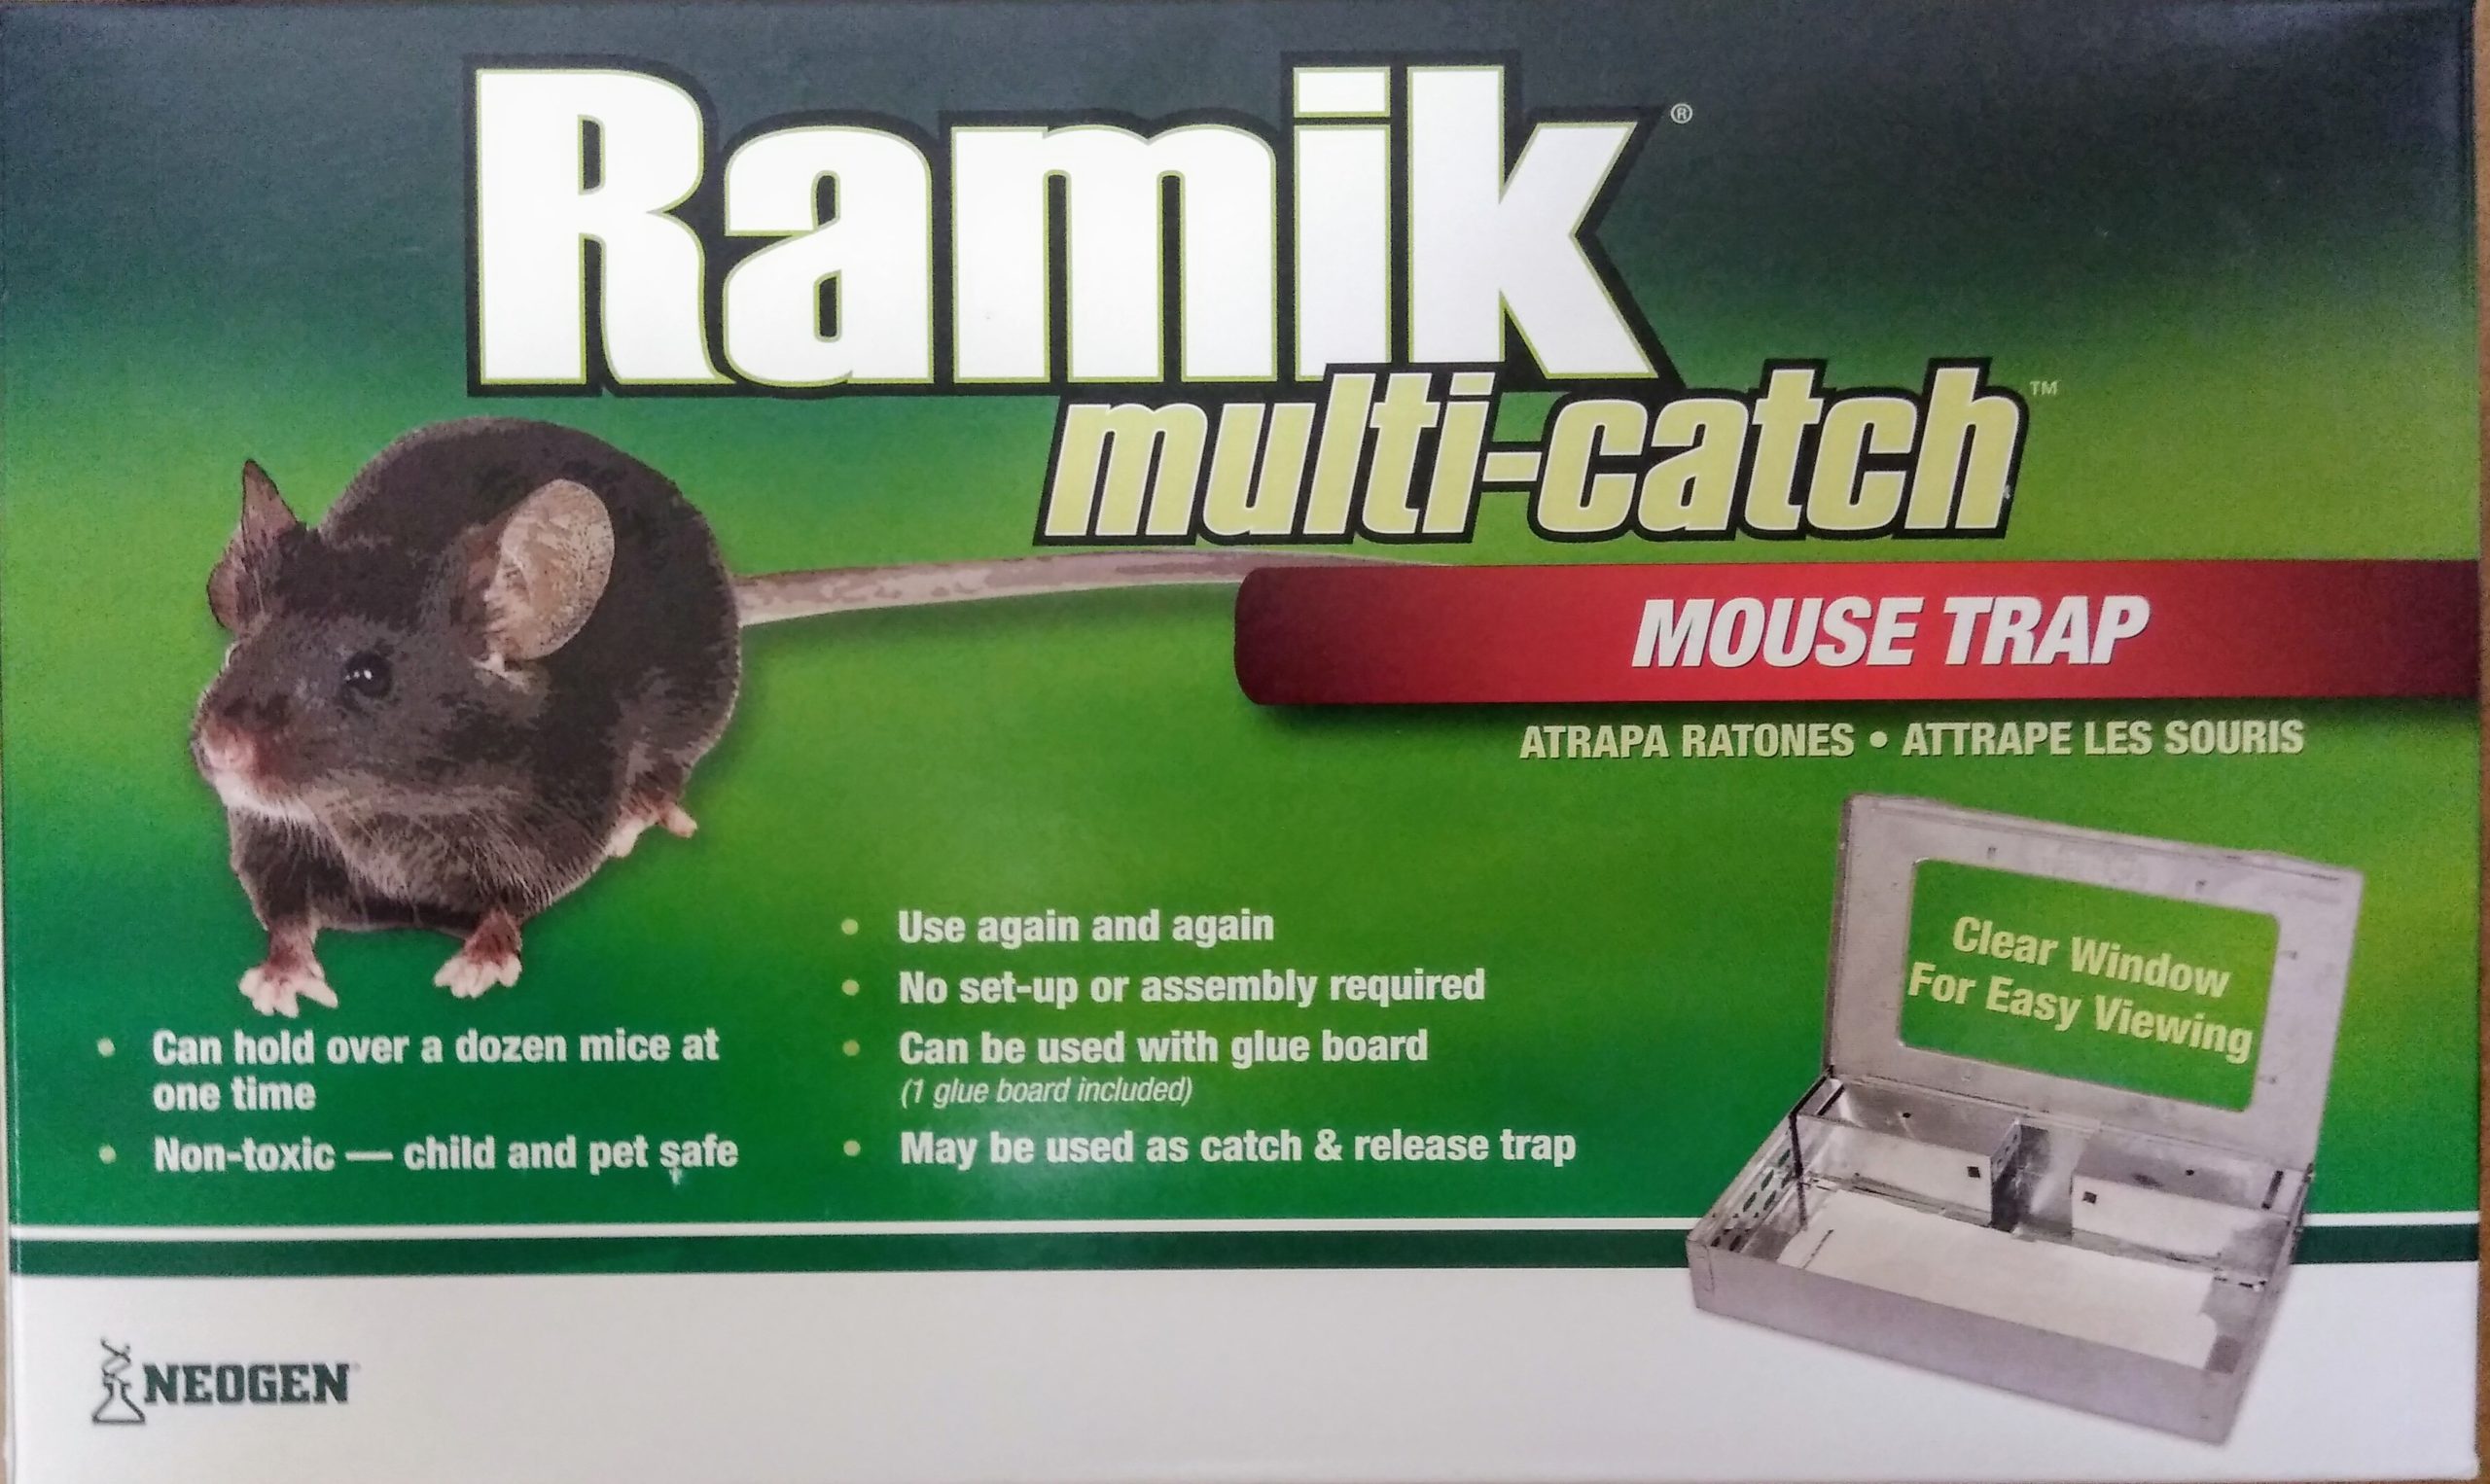 Pro-Ketch Multiple Catch Mousetrap - Clear Lid